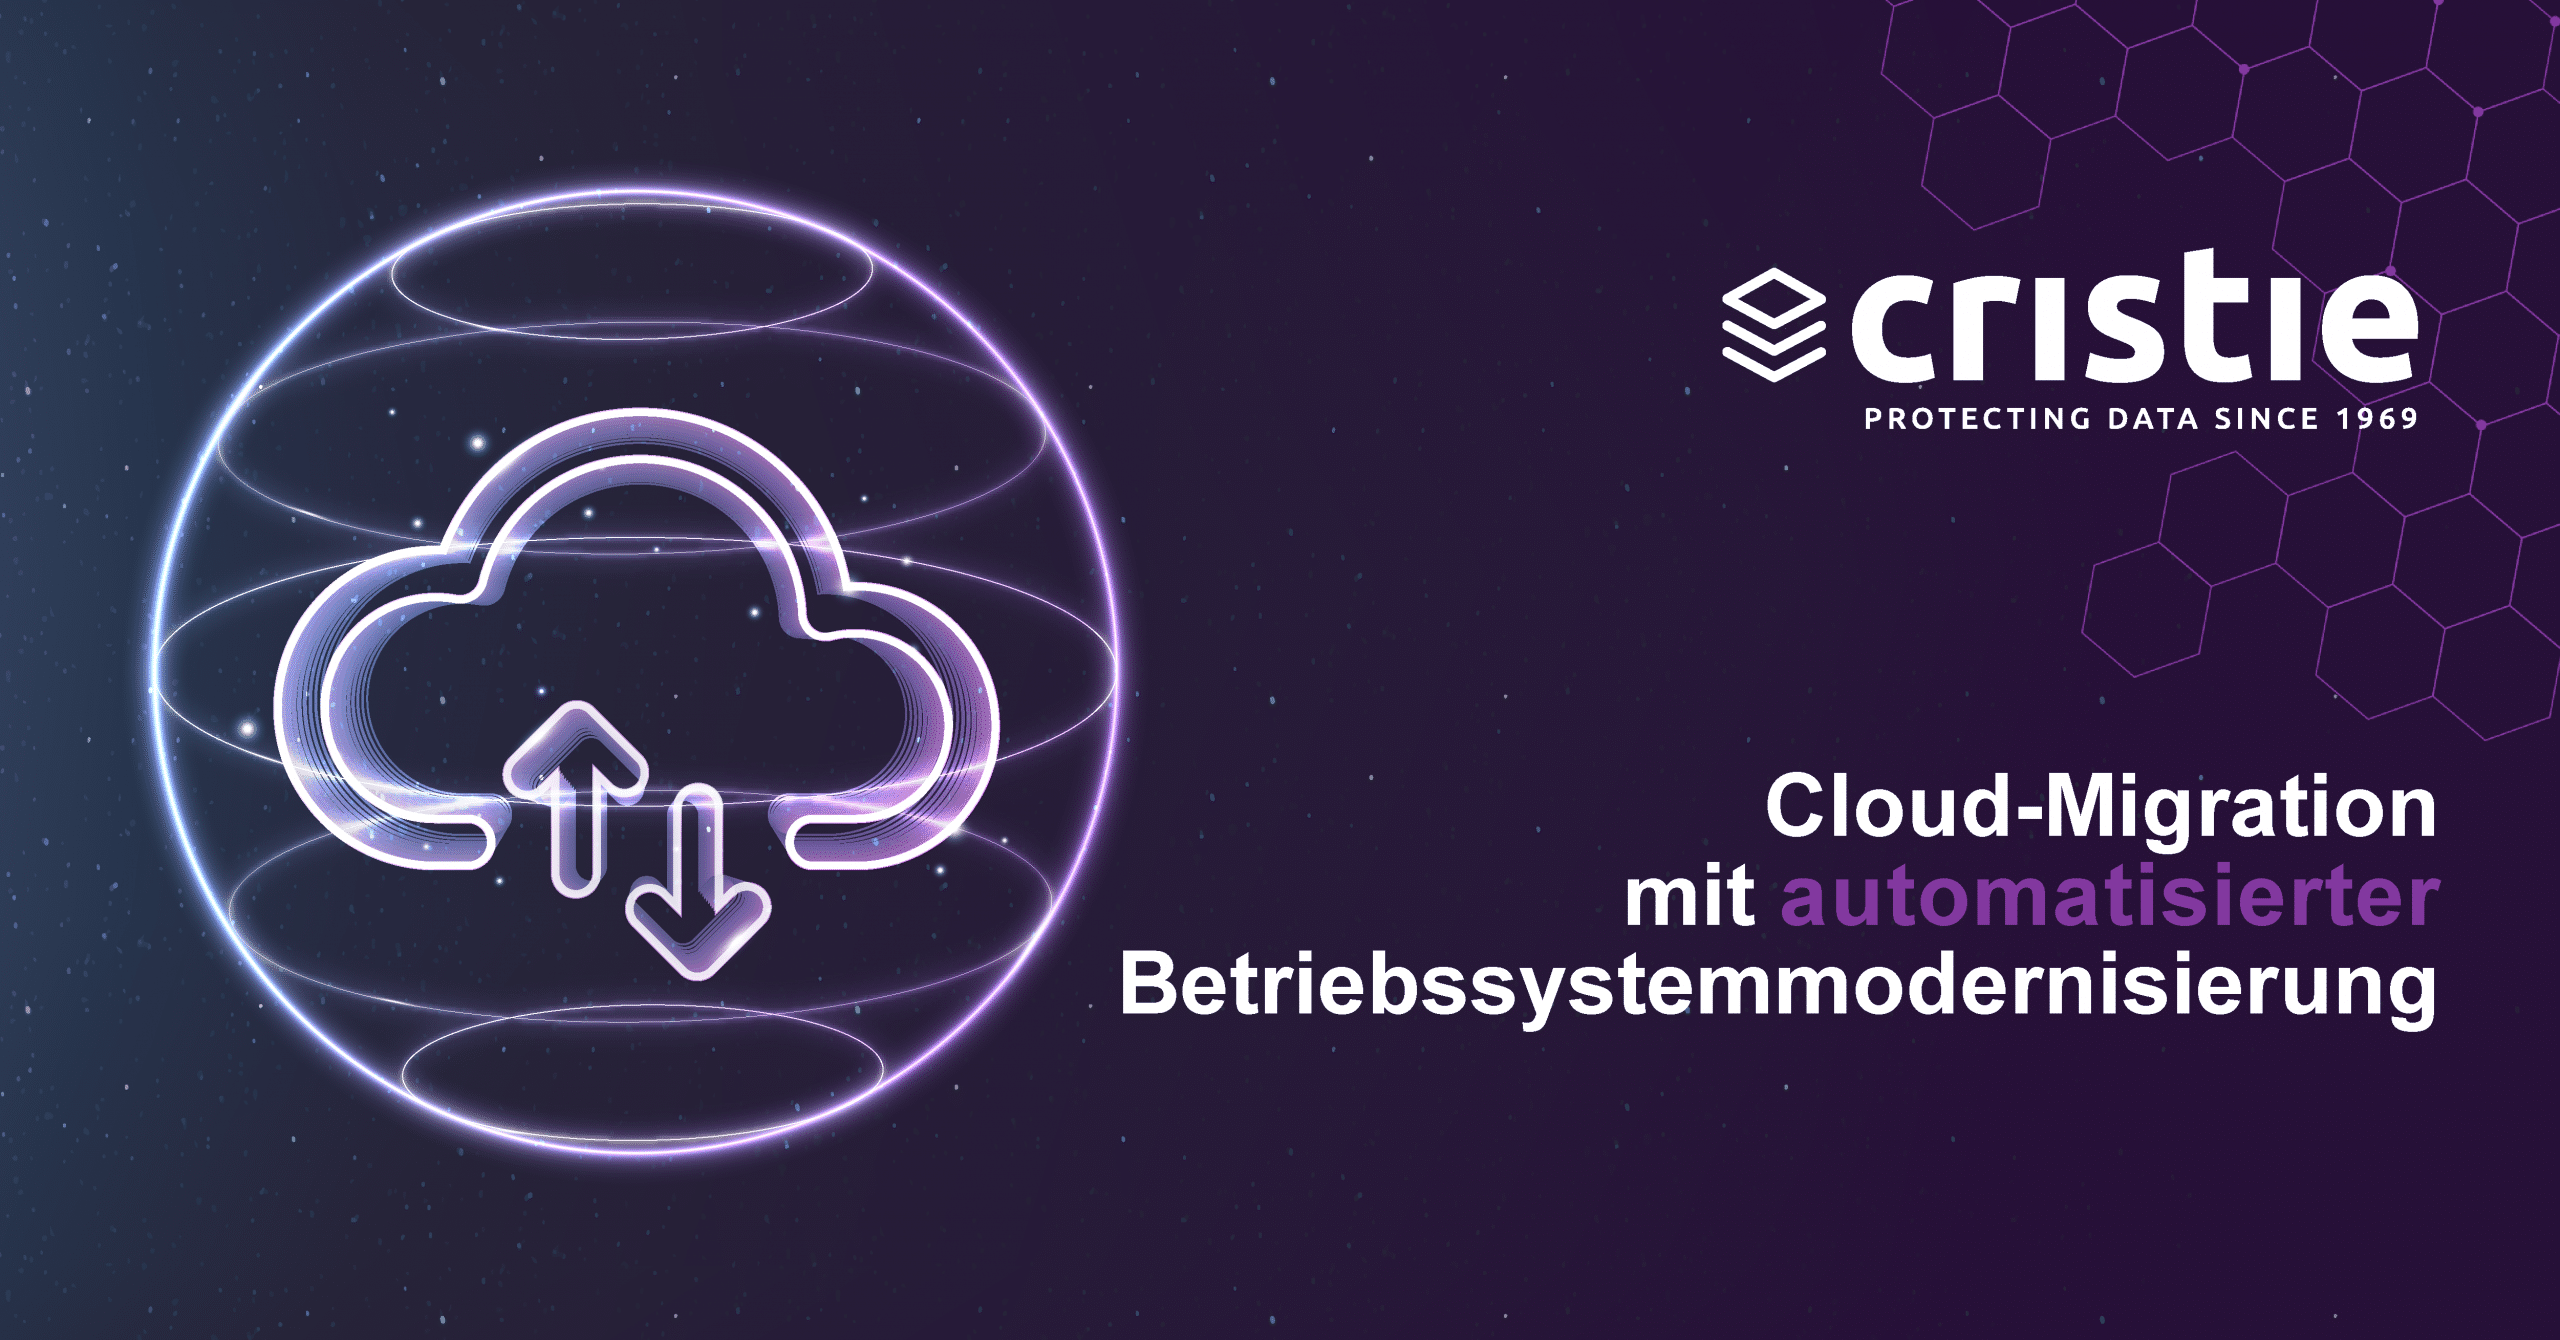 Cloud-Migration mit automatisierter Betriebssystemmodernisierung